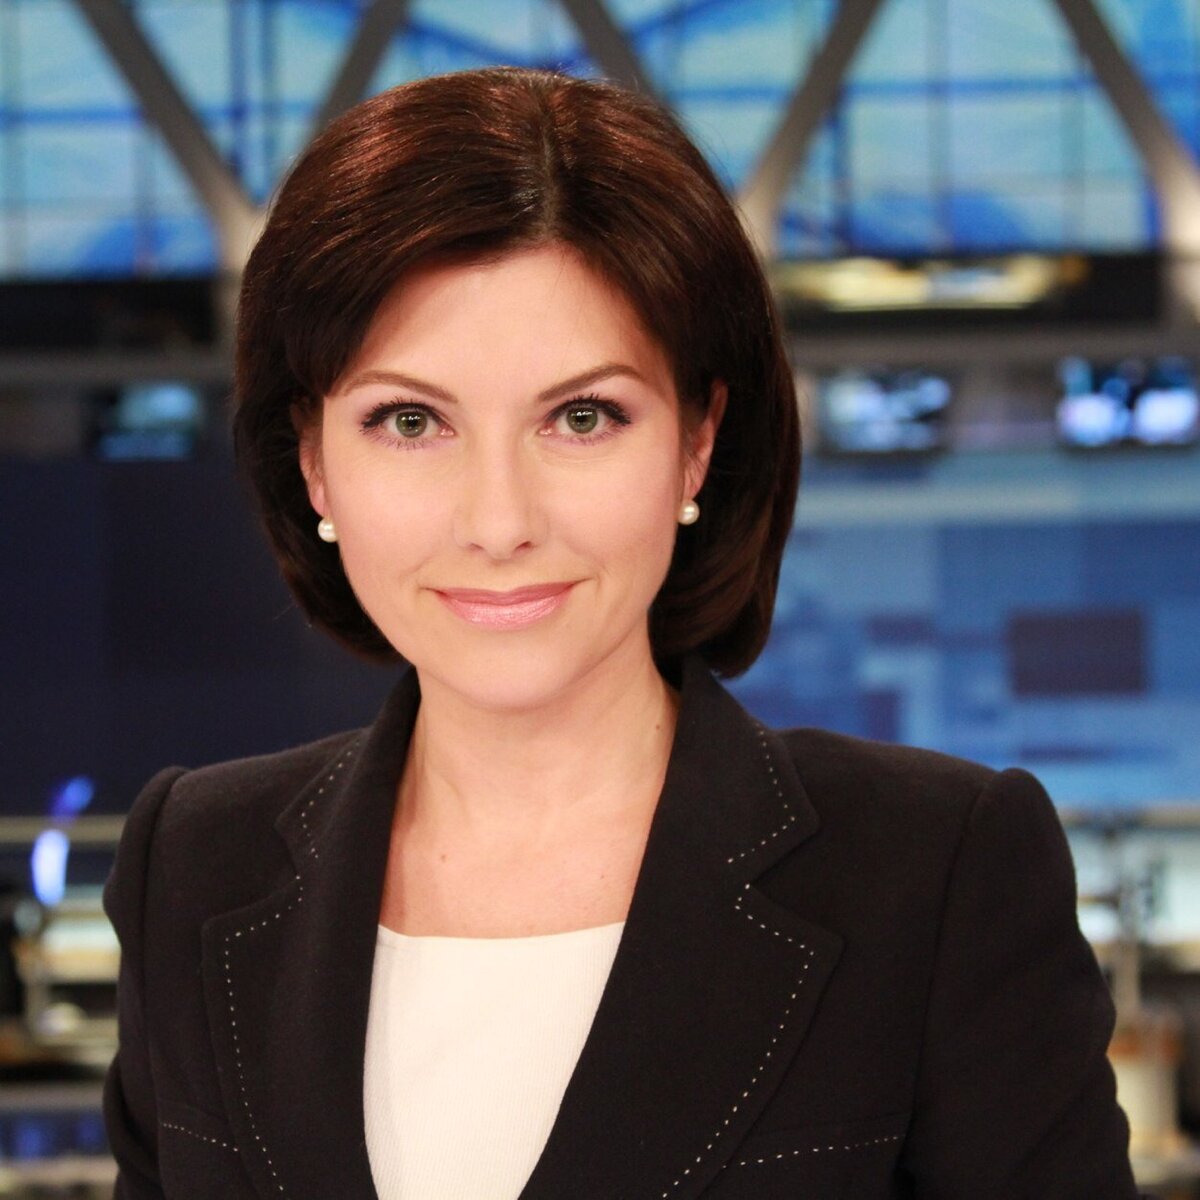 телеведущие россии 1 женщины список с фото